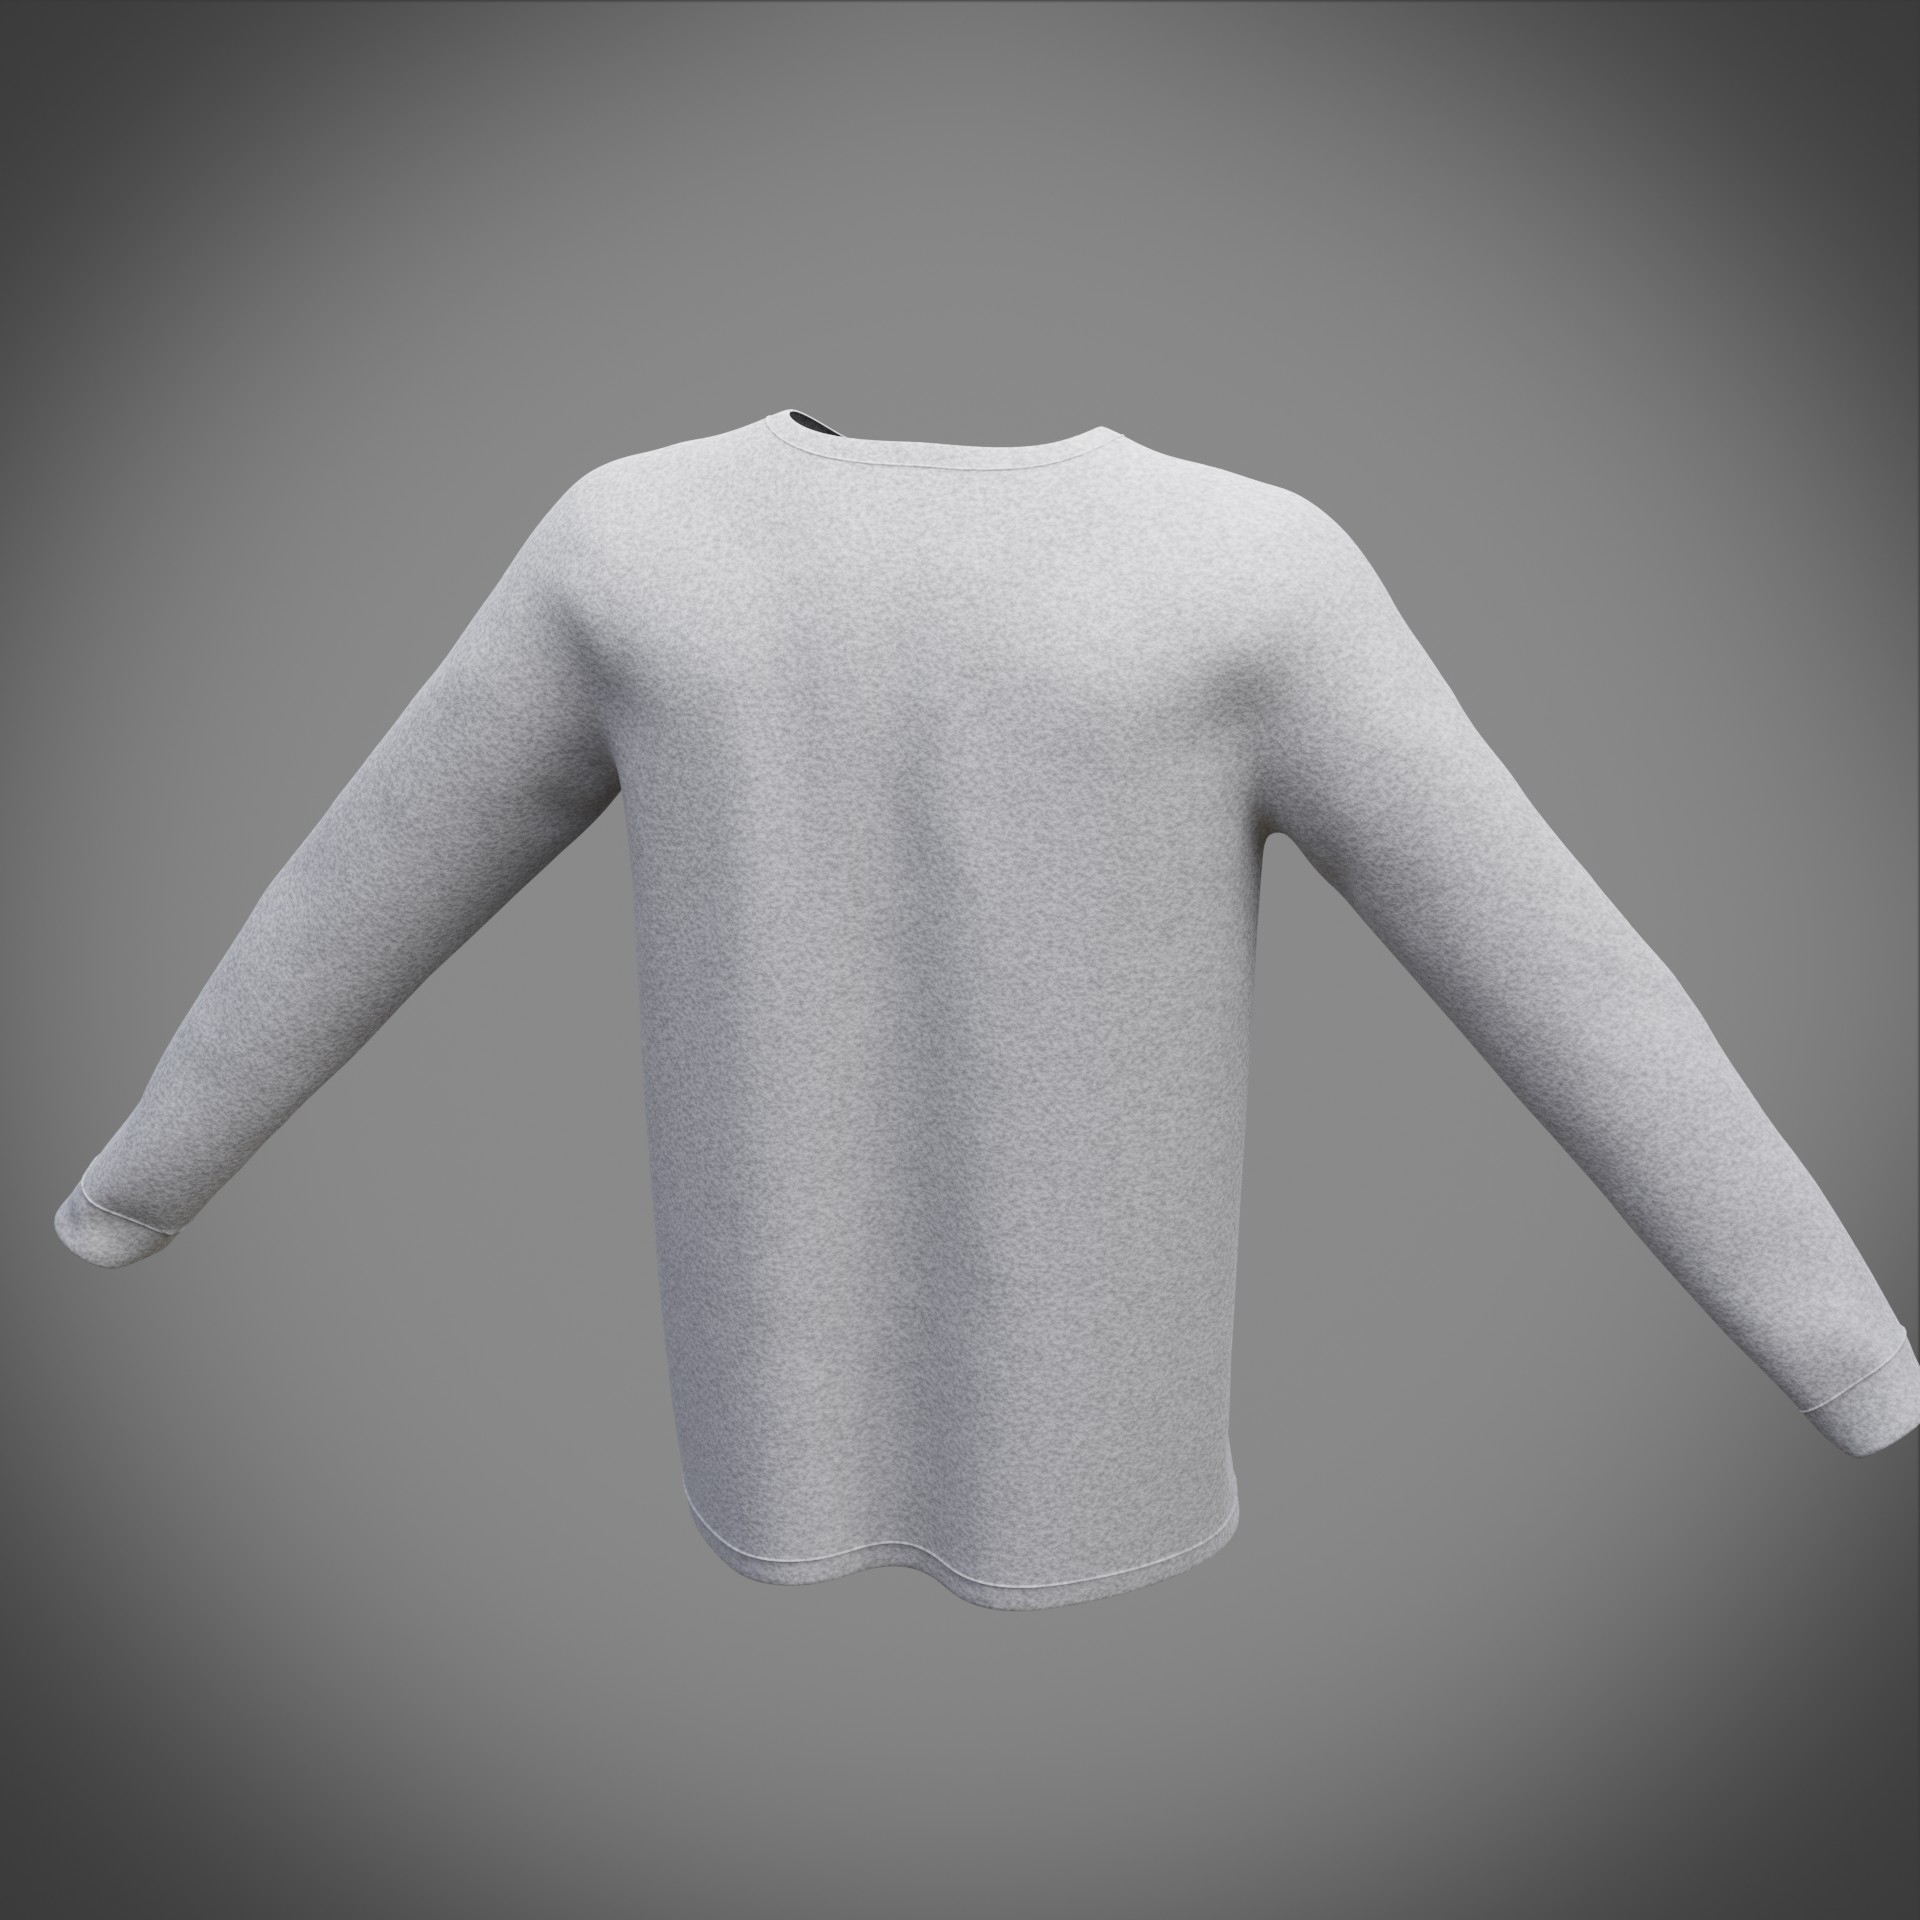 Shirt sweatshirt sweat 3D model - TurboSquid 1682482